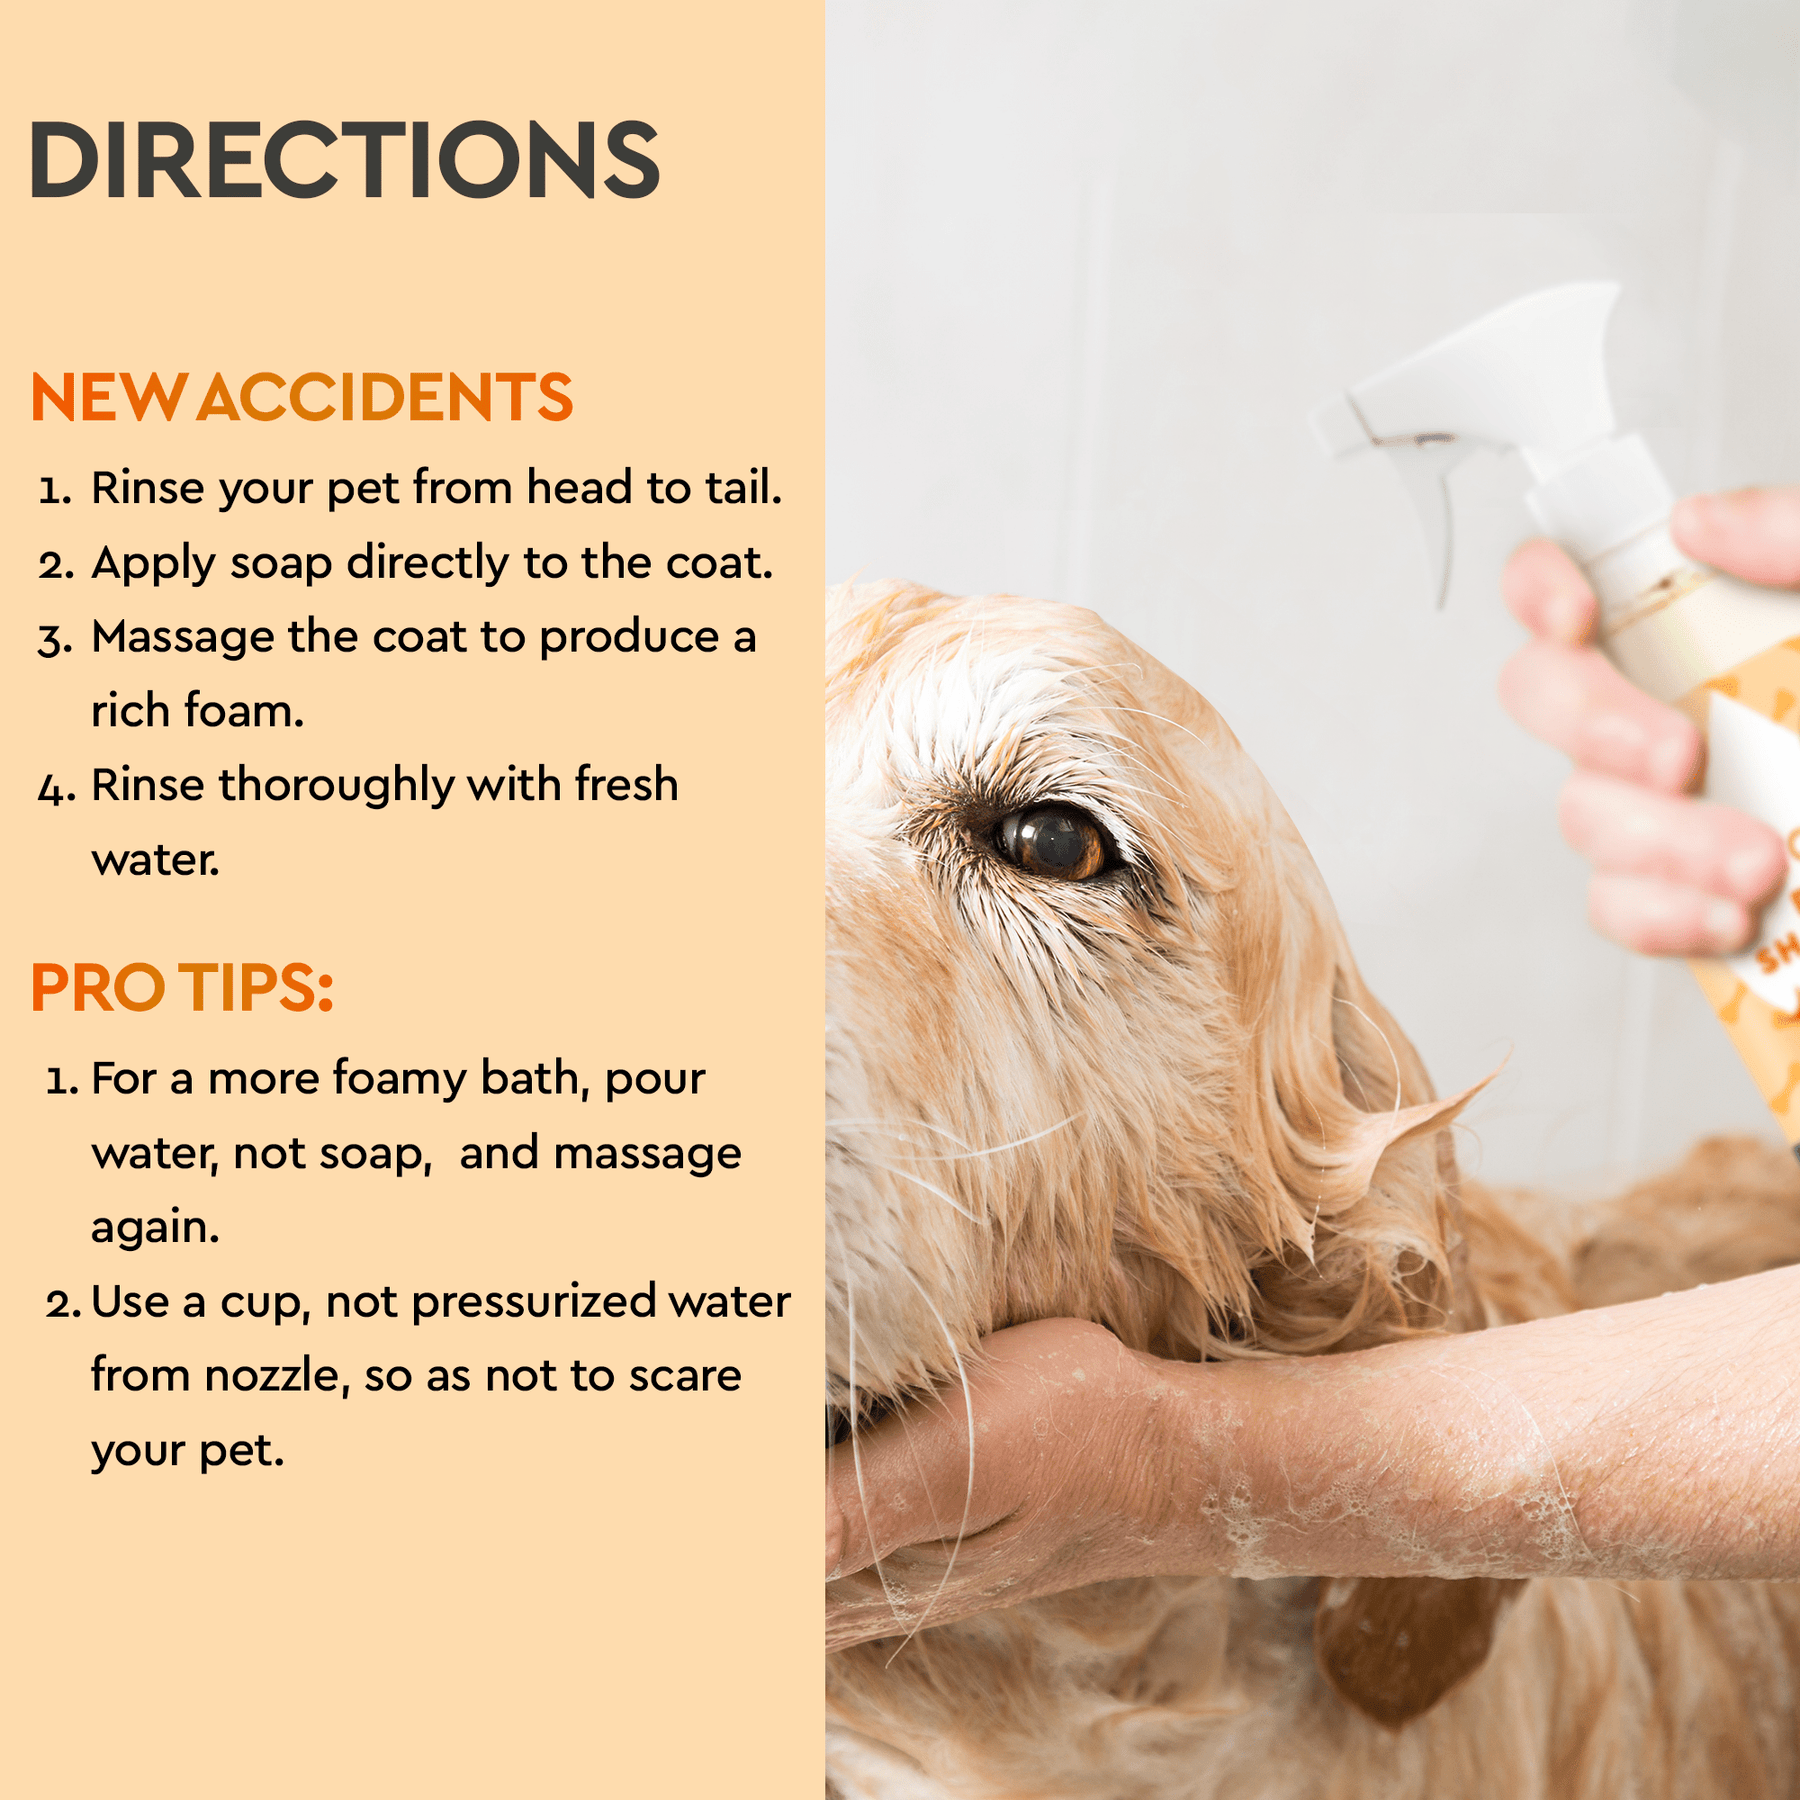 How to use Puracy Natural Pet Shampoo